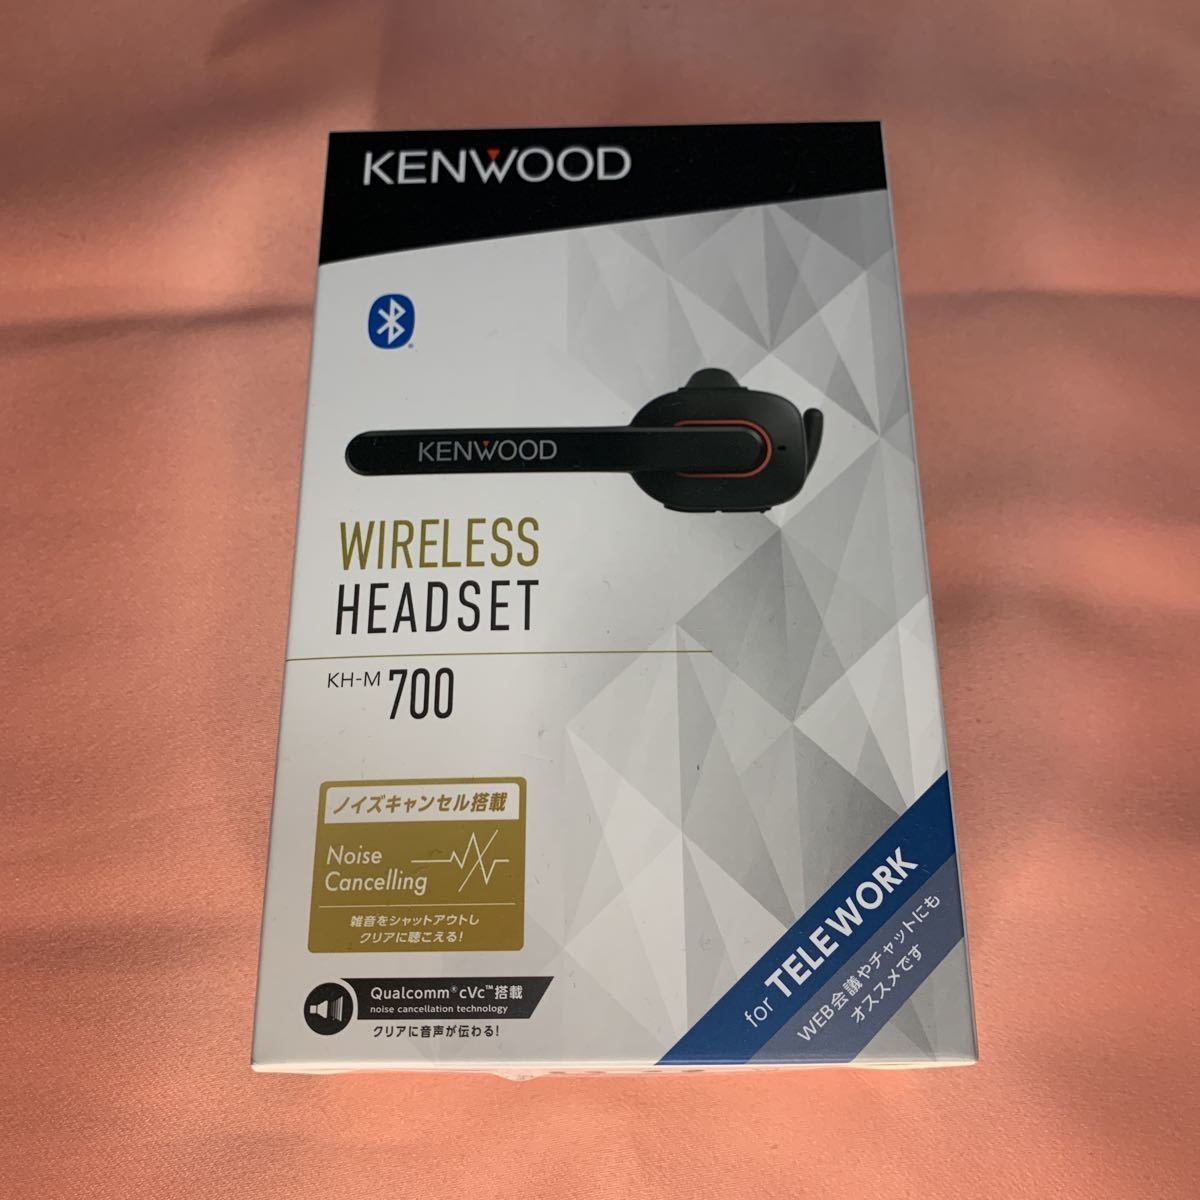 JVCケンウッド KENWOOD KH-M700-B 片耳ヘッドセット ワイヤレス Bluetooth ハンズフリー テレワーク テレビ会議 ブラック 未開封未使用品